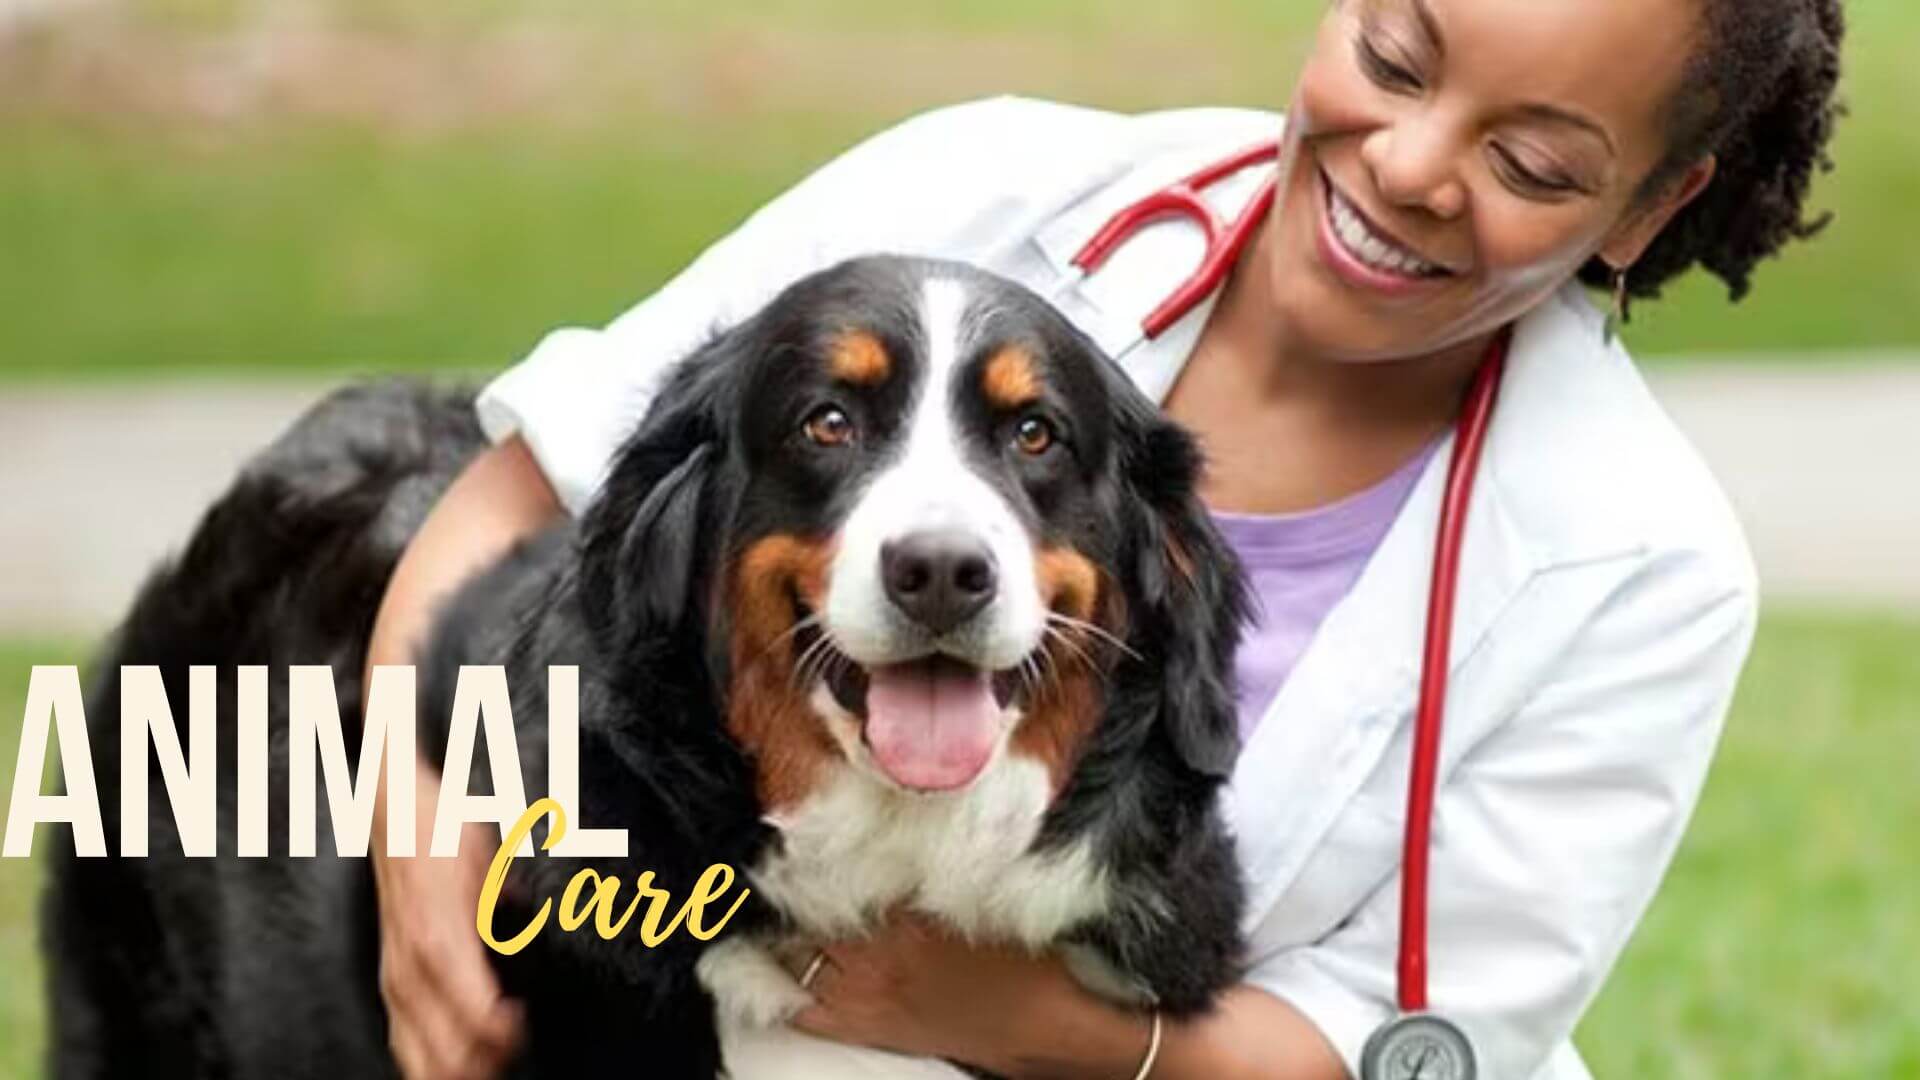 vet holding a dog